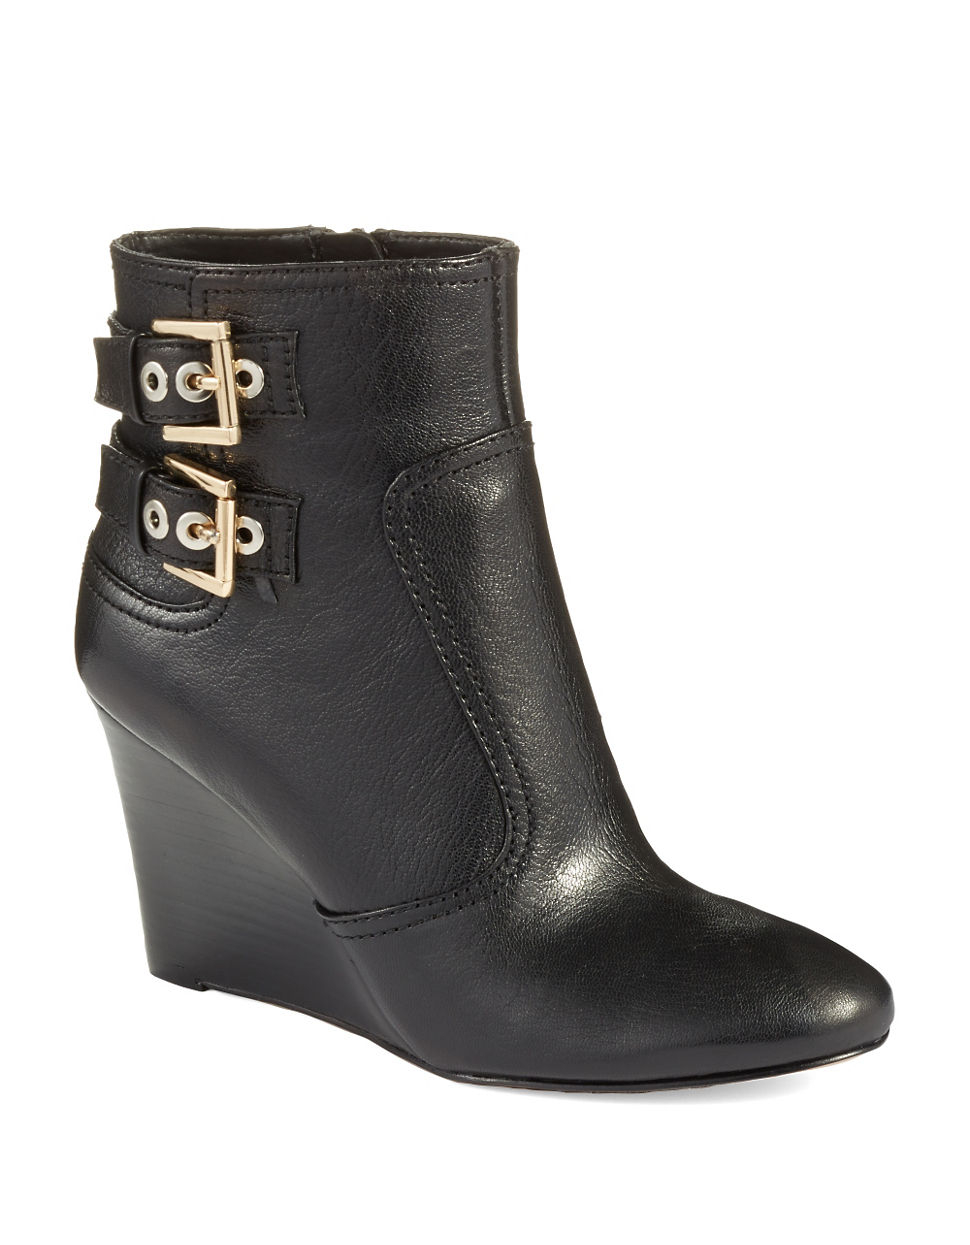 Nine West Herbert Wedge Boots in Black | Lyst